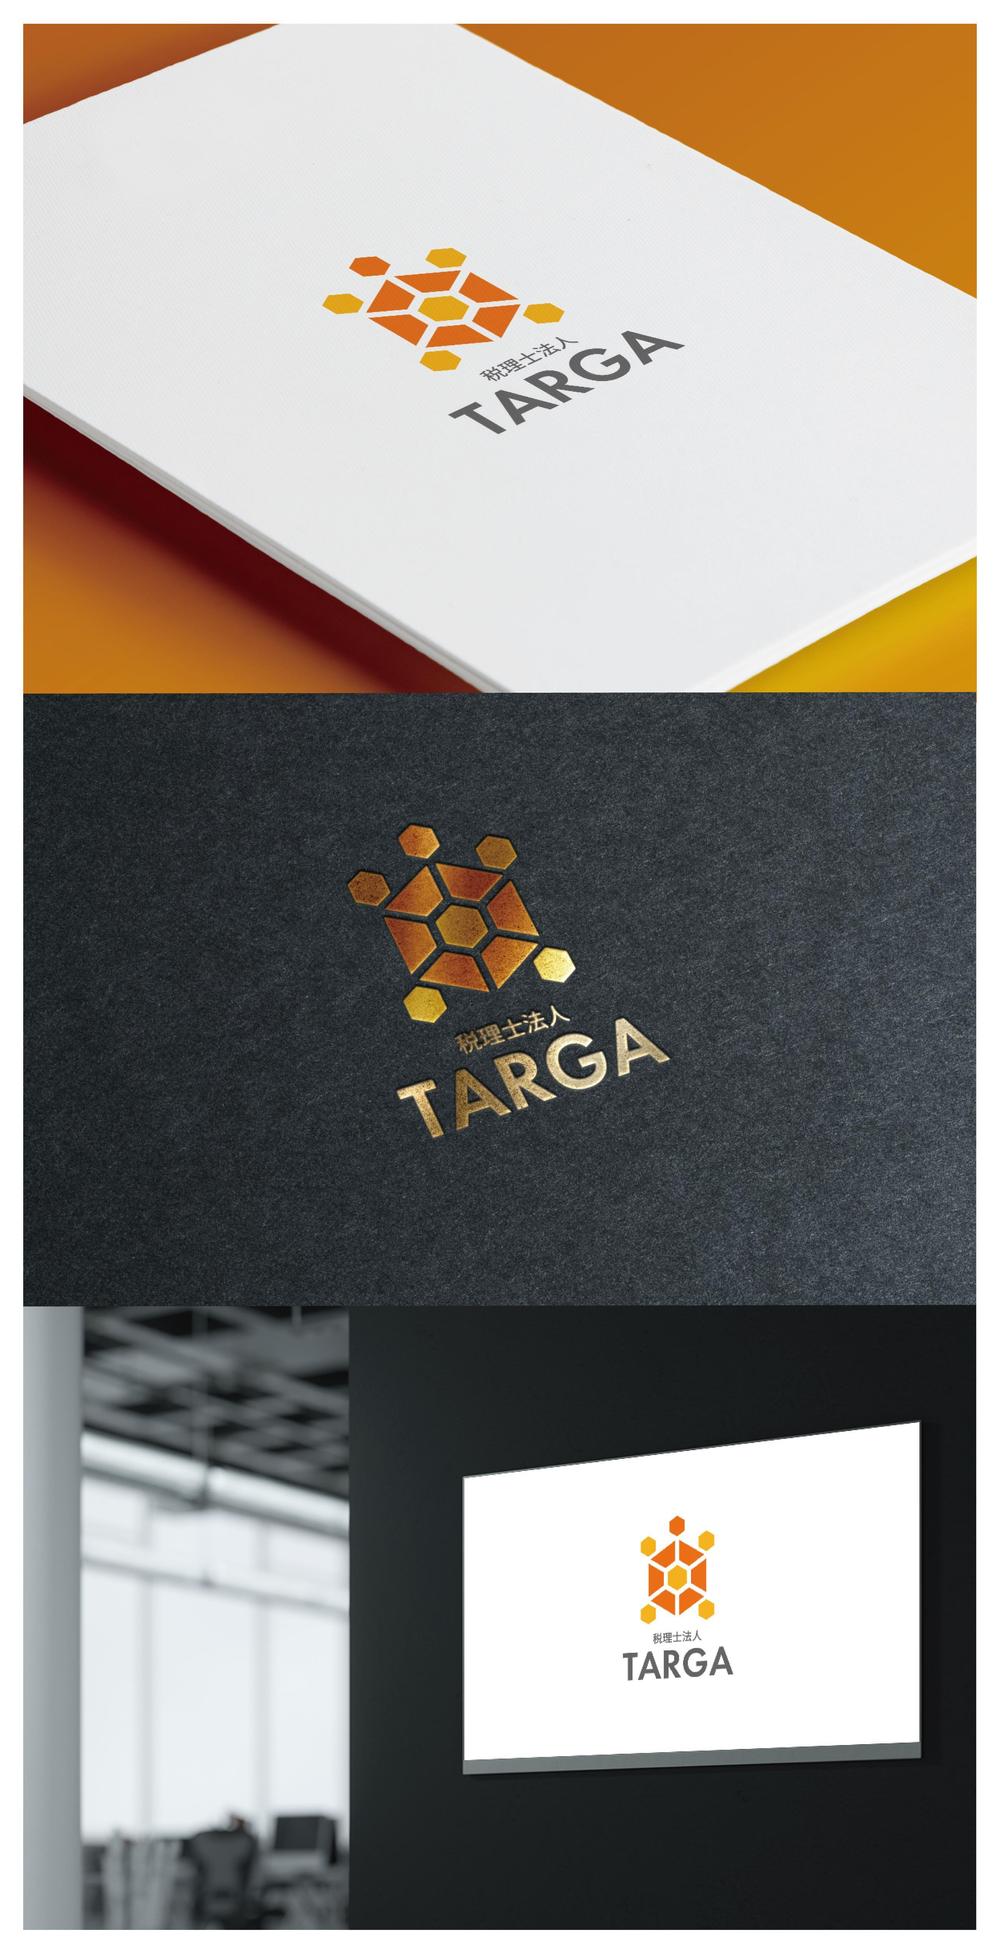 TARGA_logo01_01.jpg